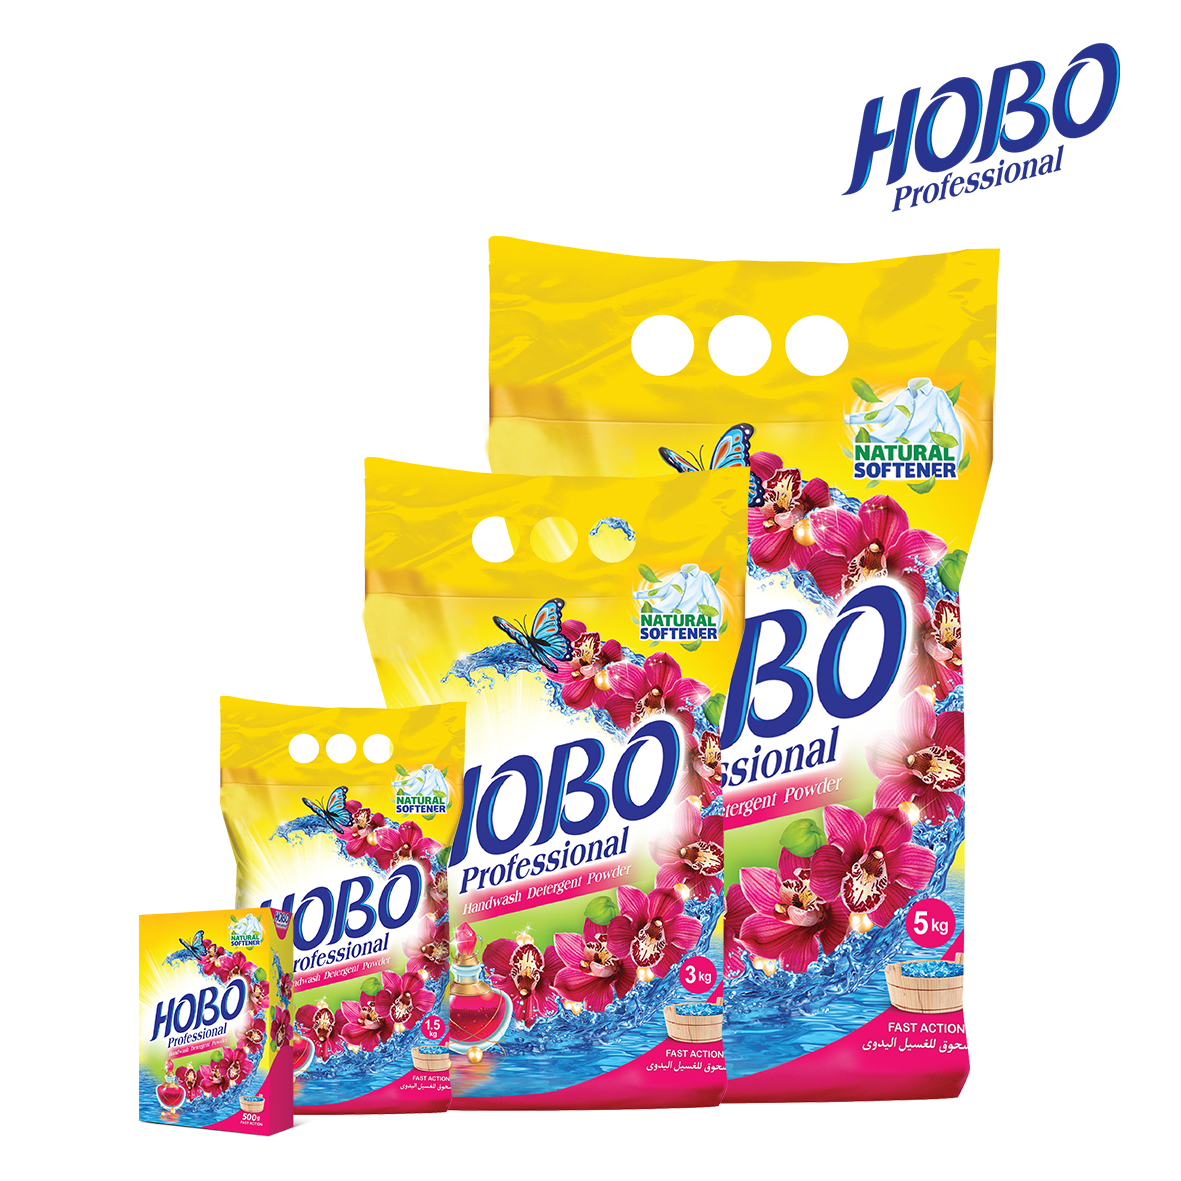 hobo-hand-wash-detergent-powder